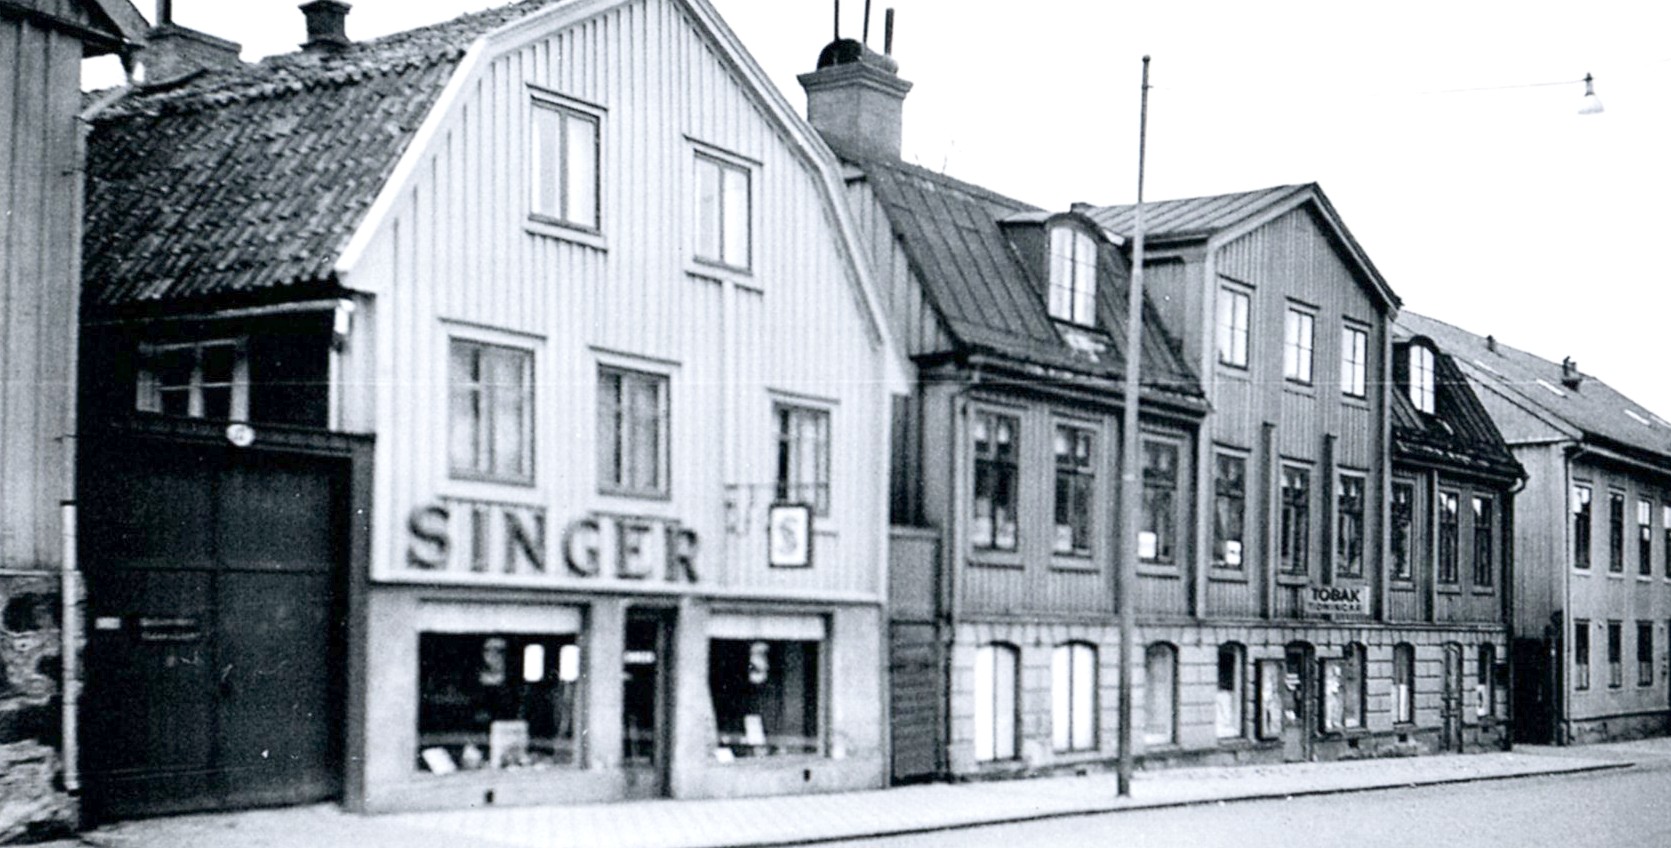 Östra Köpmansgatan 19 (huset till höger om "Singer")